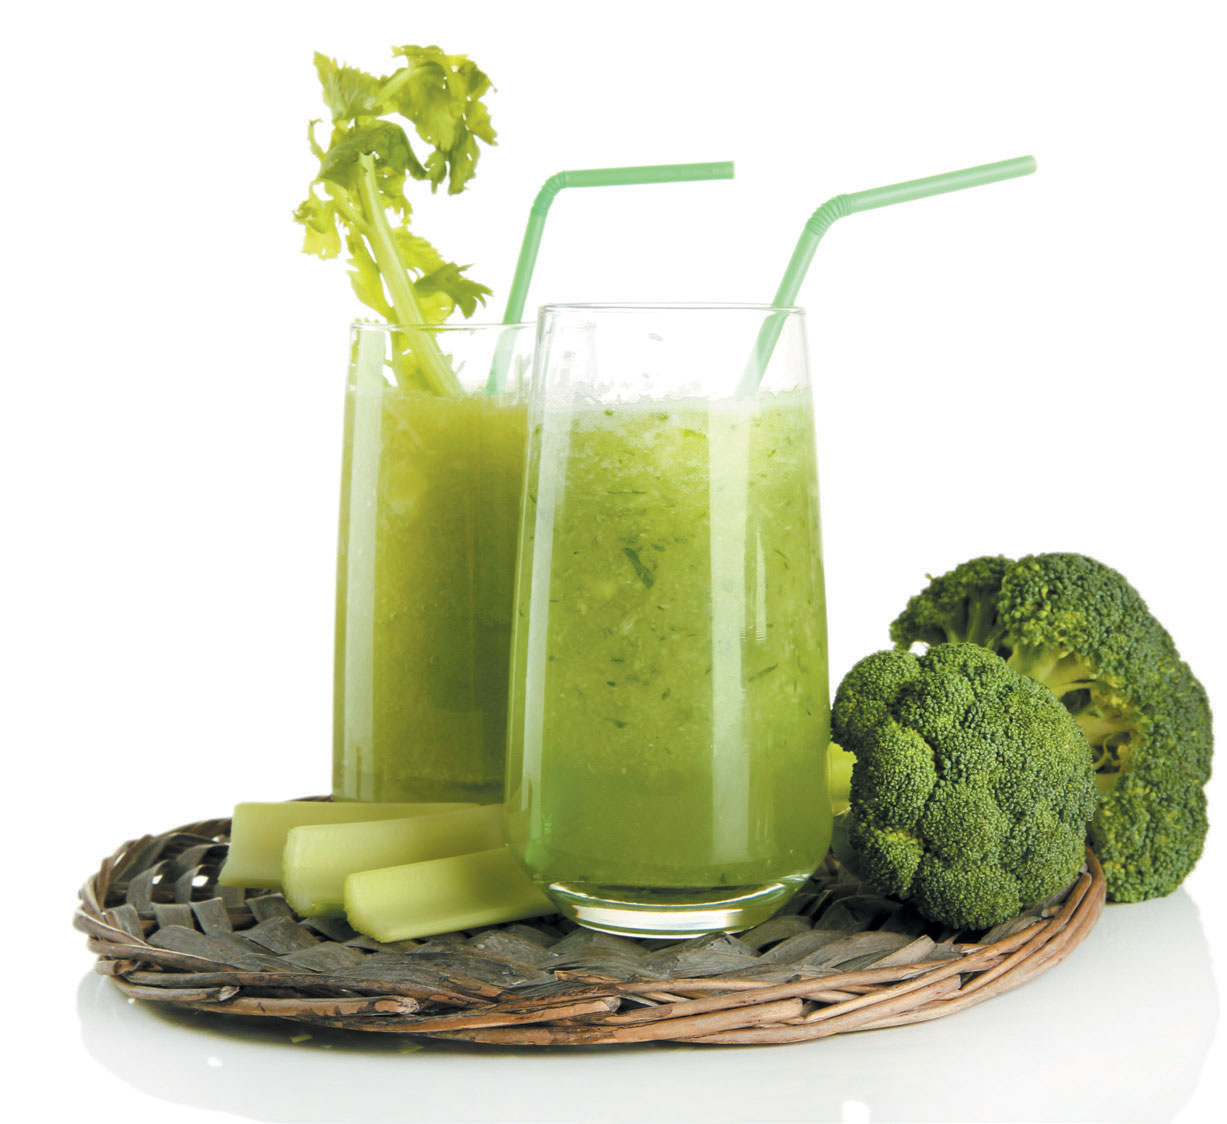 Gör proteinsmoothies baserade på grönsaker och nyttiga fetter som avokado och kokosmjölk för att hålla energin uppe. 